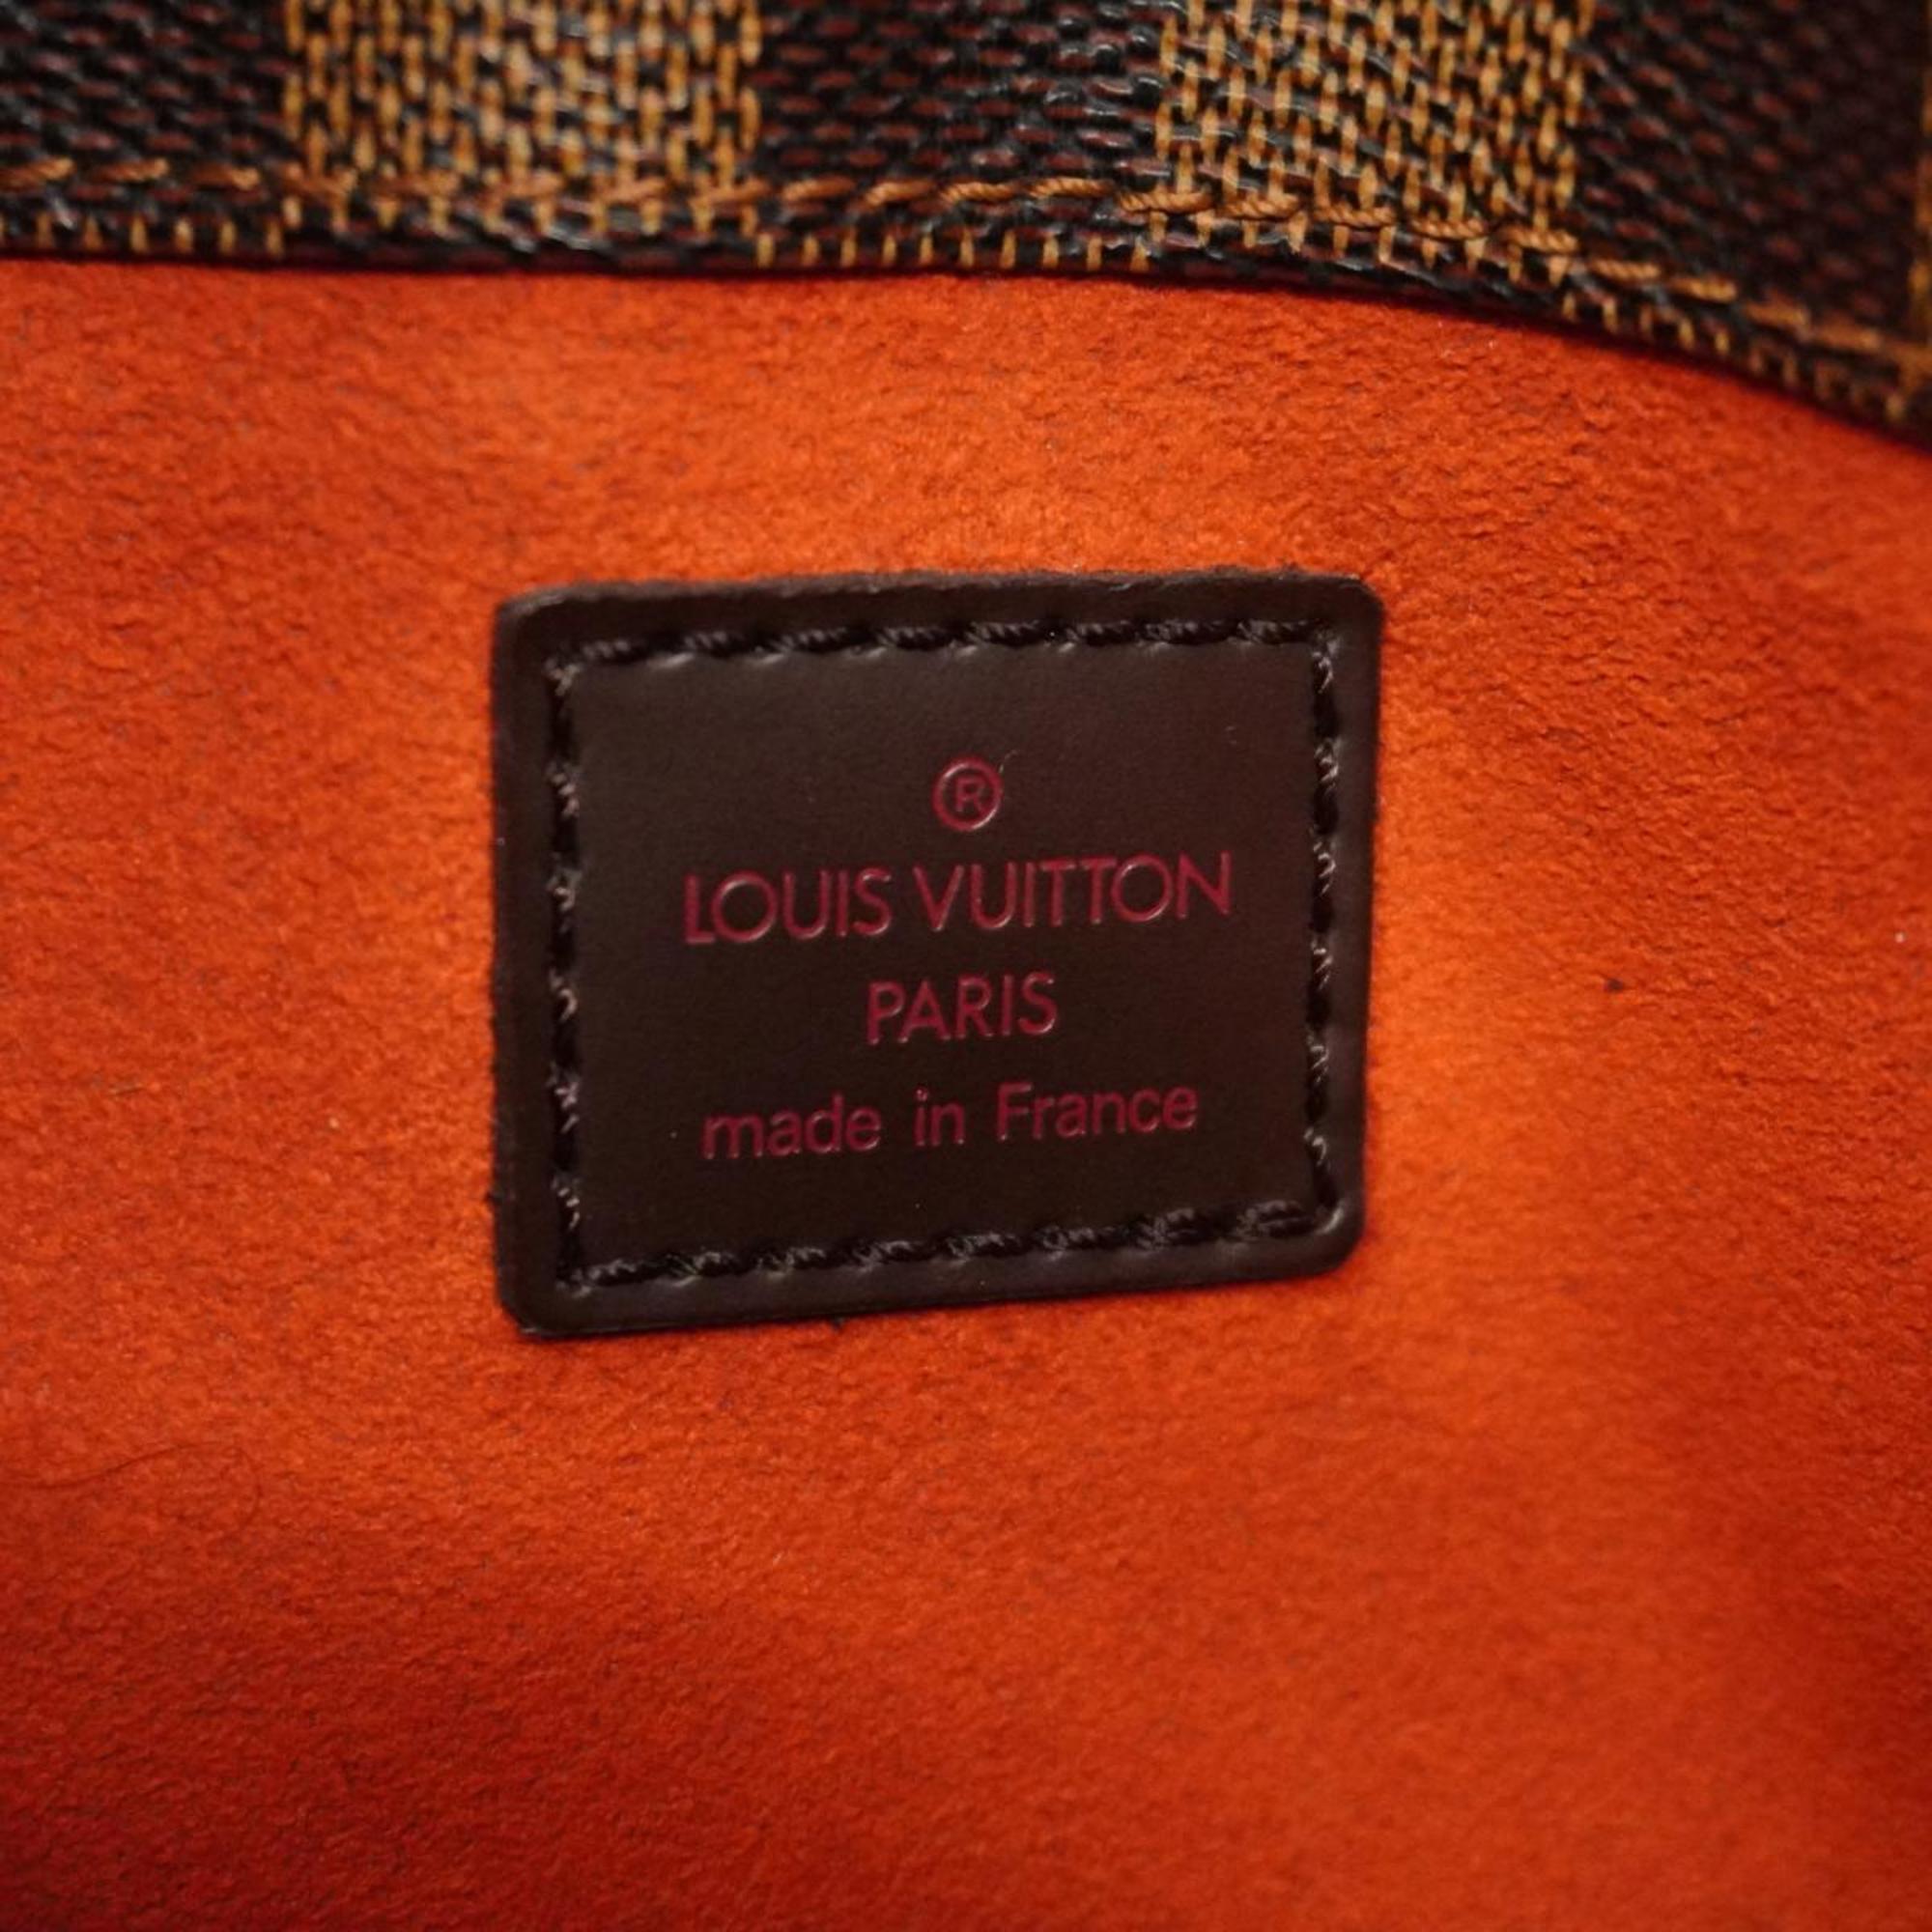 ルイ・ヴィトン(Louis Vuitton) ルイ・ヴィトン ショルダーバッグ ダミエ オーバーニュ N51129 エベヌレディース